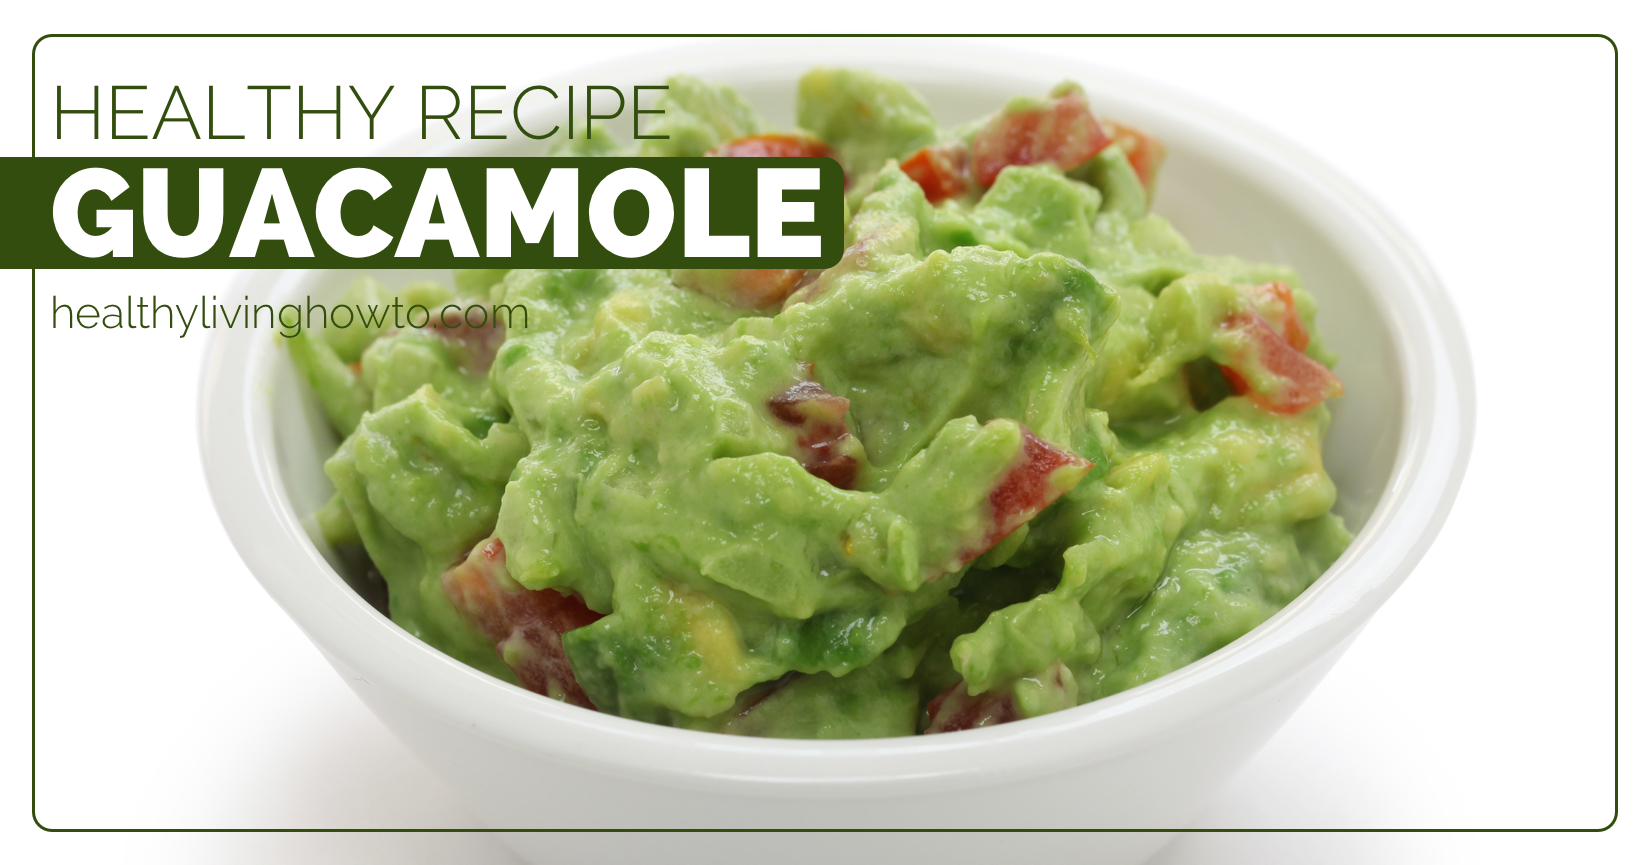 Healthy Recipe: Guacamole | healthylivinghowto.com